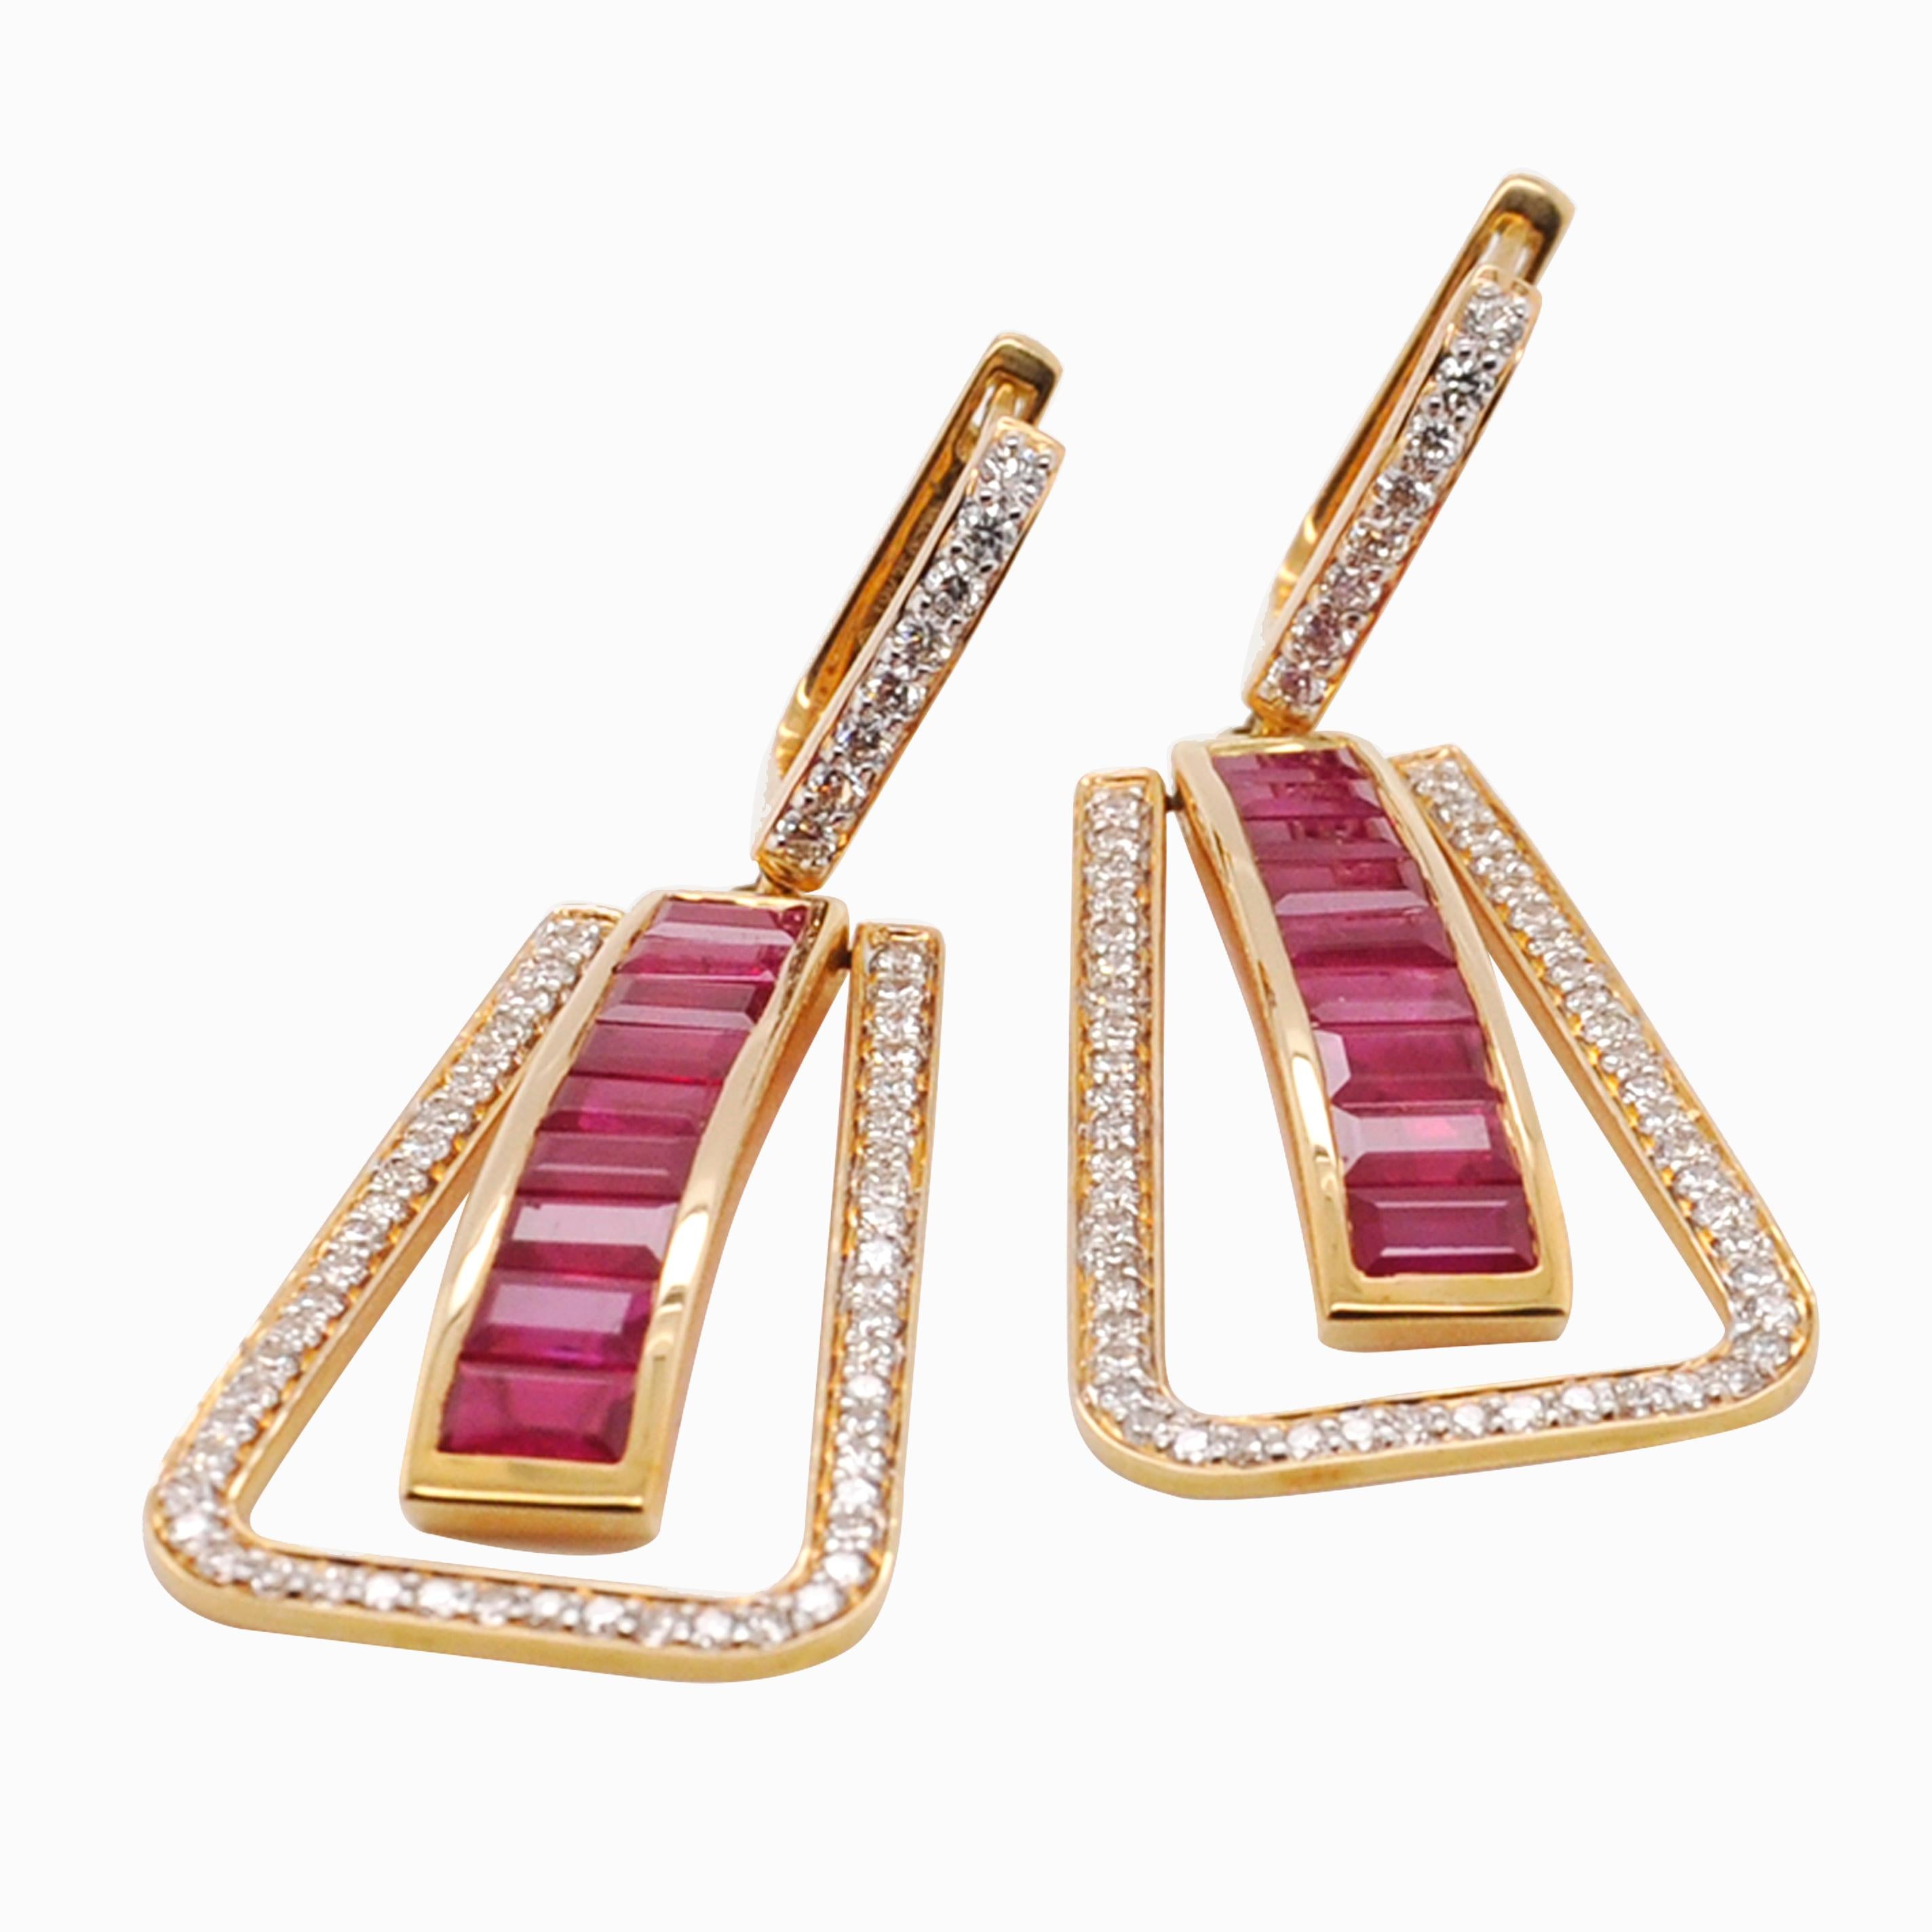 Baguette Cut Art Deco Style 18 Karat Gold Channel Set Ruby Baguette Diamond Linear Earrings For Sale